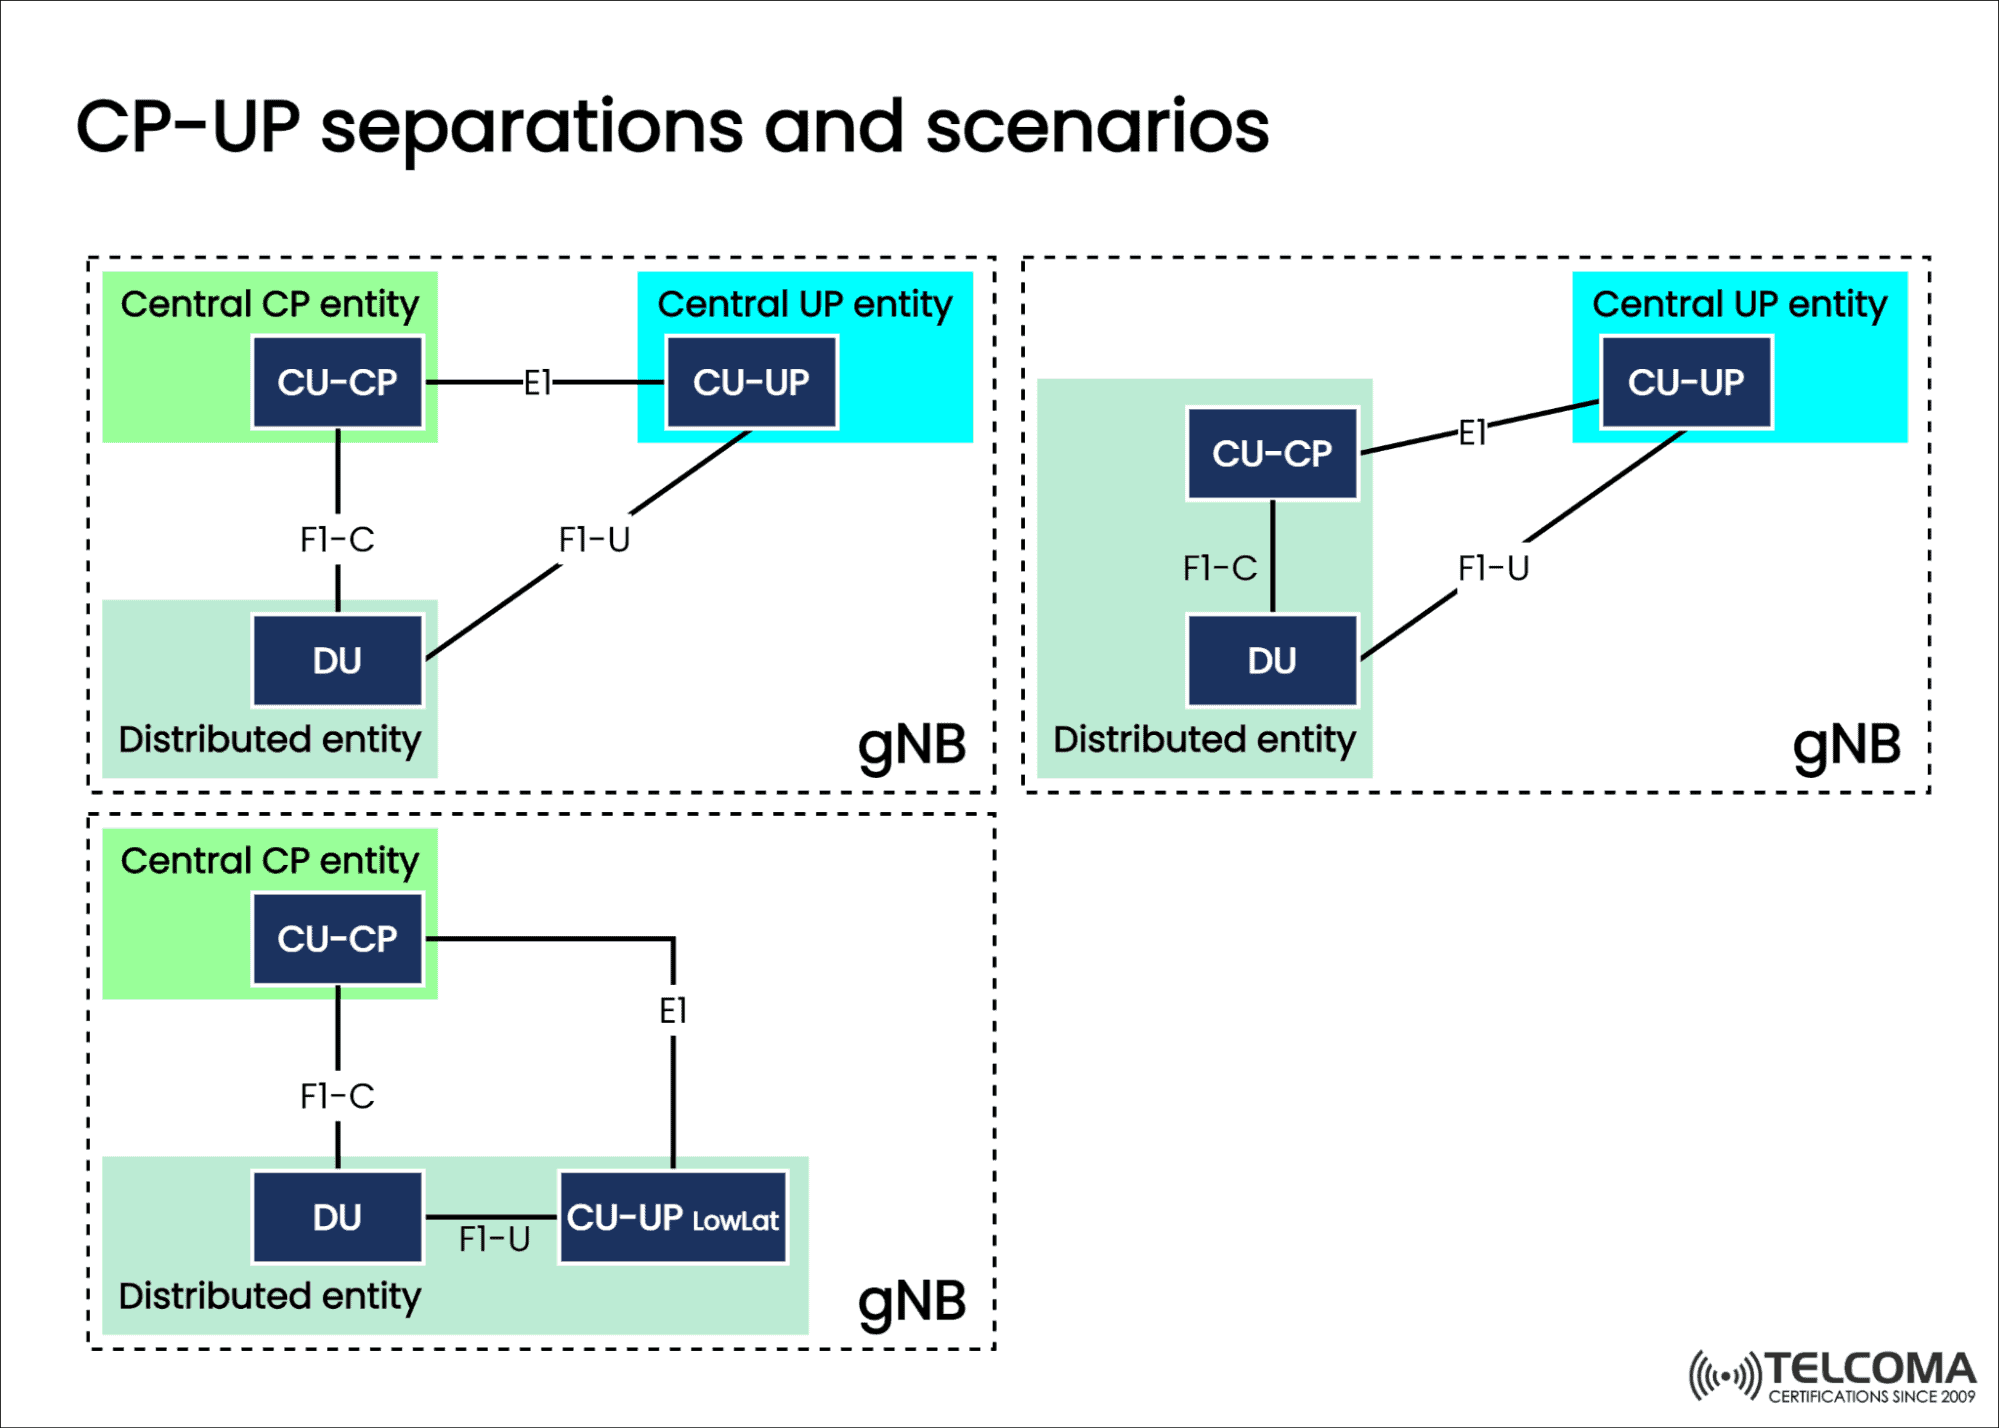  CP-UP separations and scenarios (3GPP TR38.806)